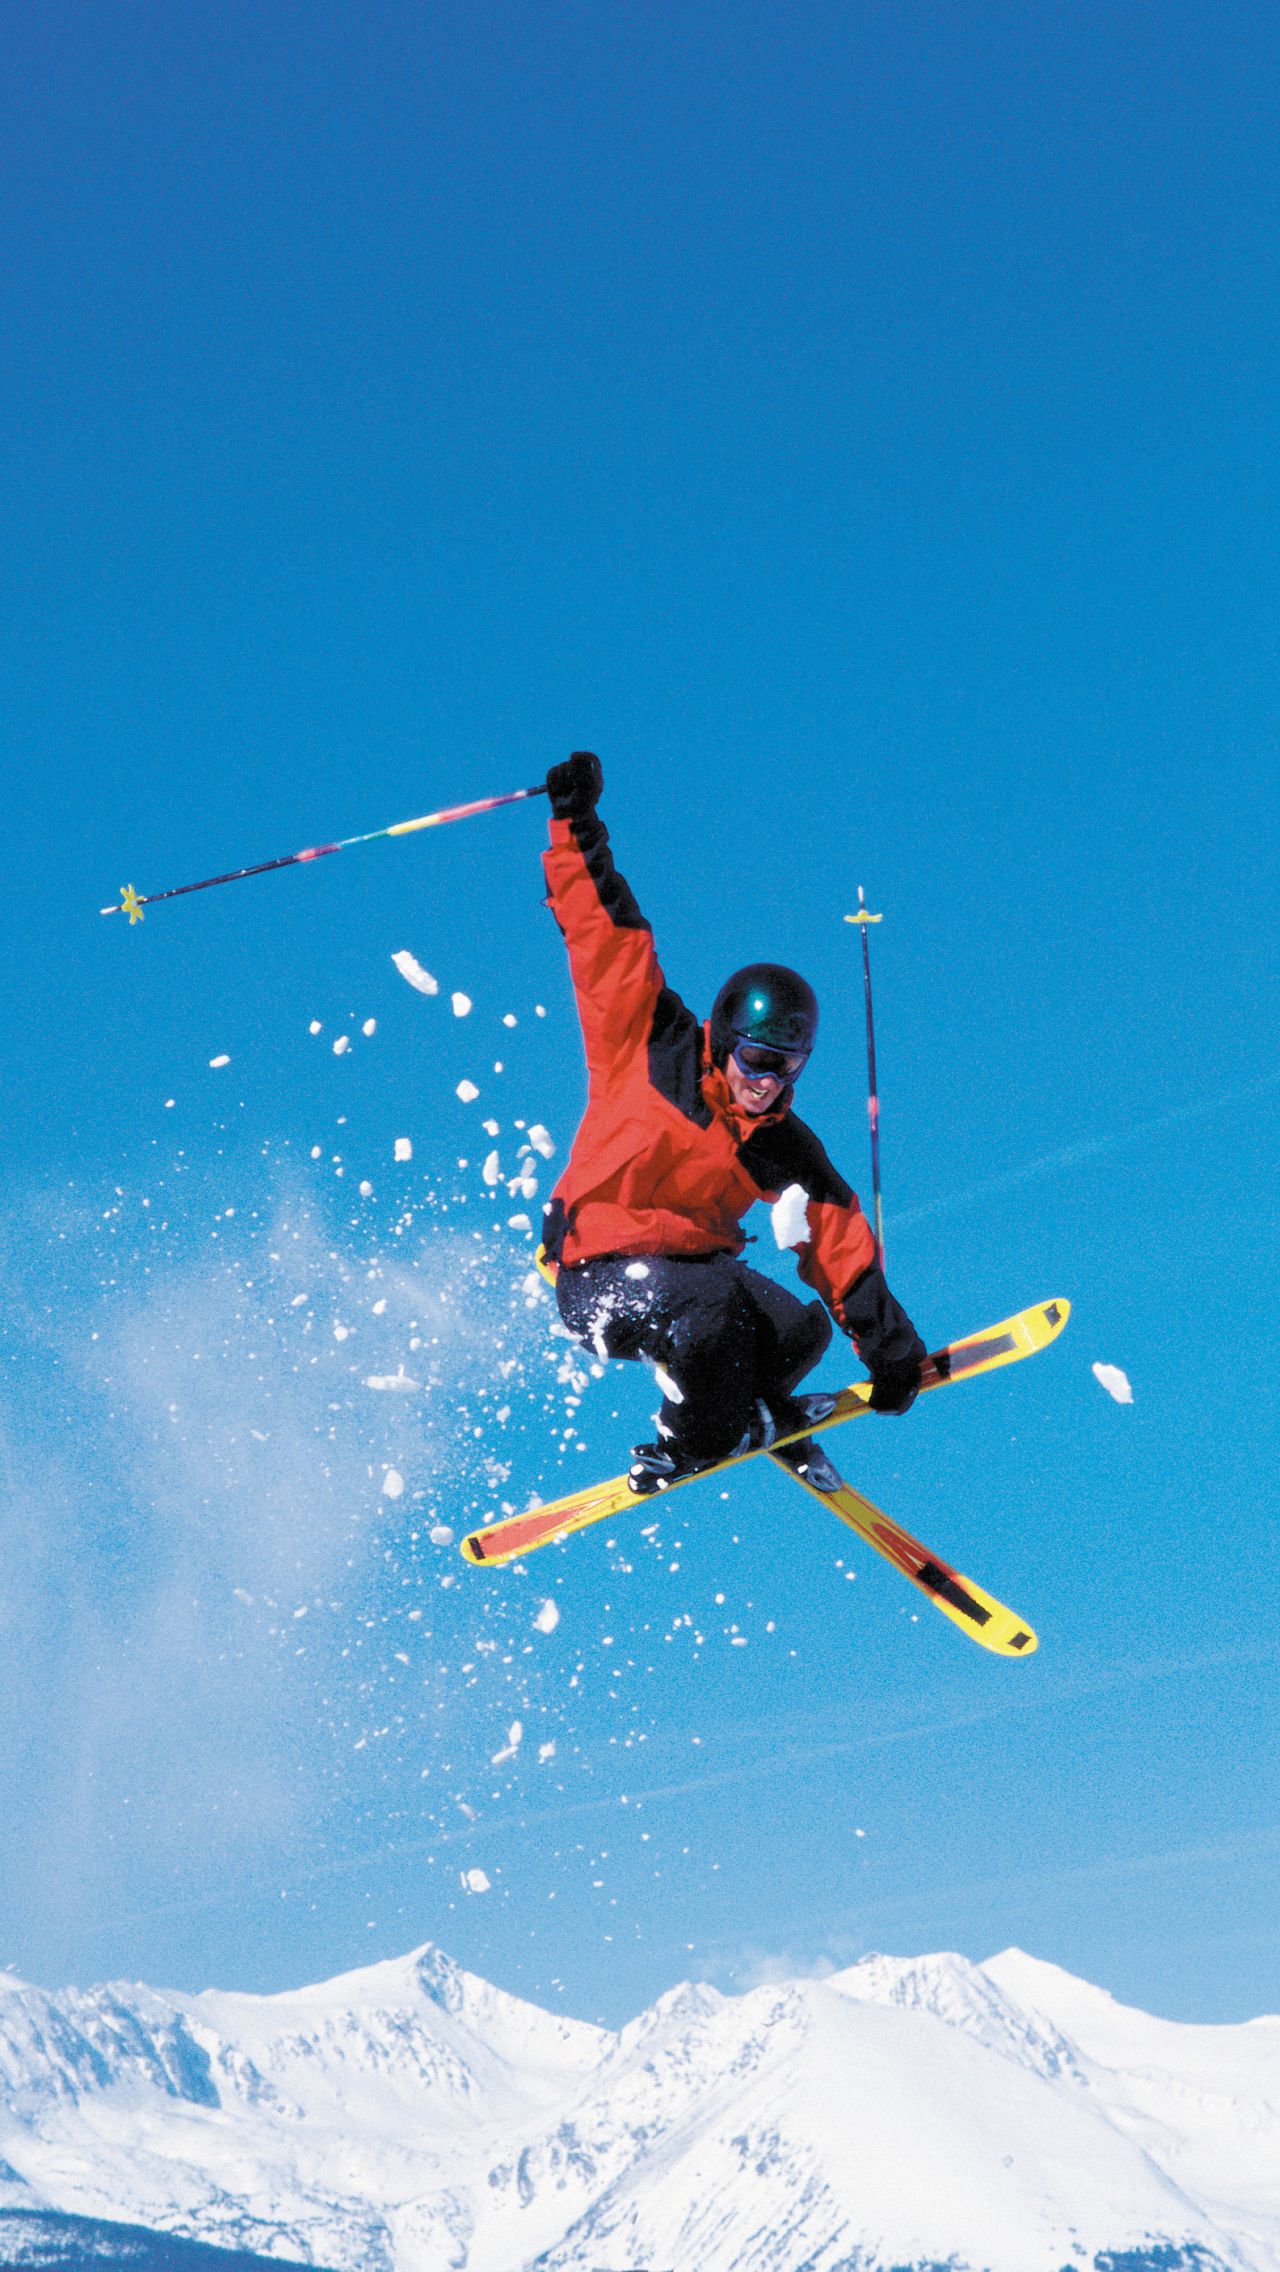 Синхронное сальто на лыжах. Как думаете, сколько ребята оттачивали прыжок?